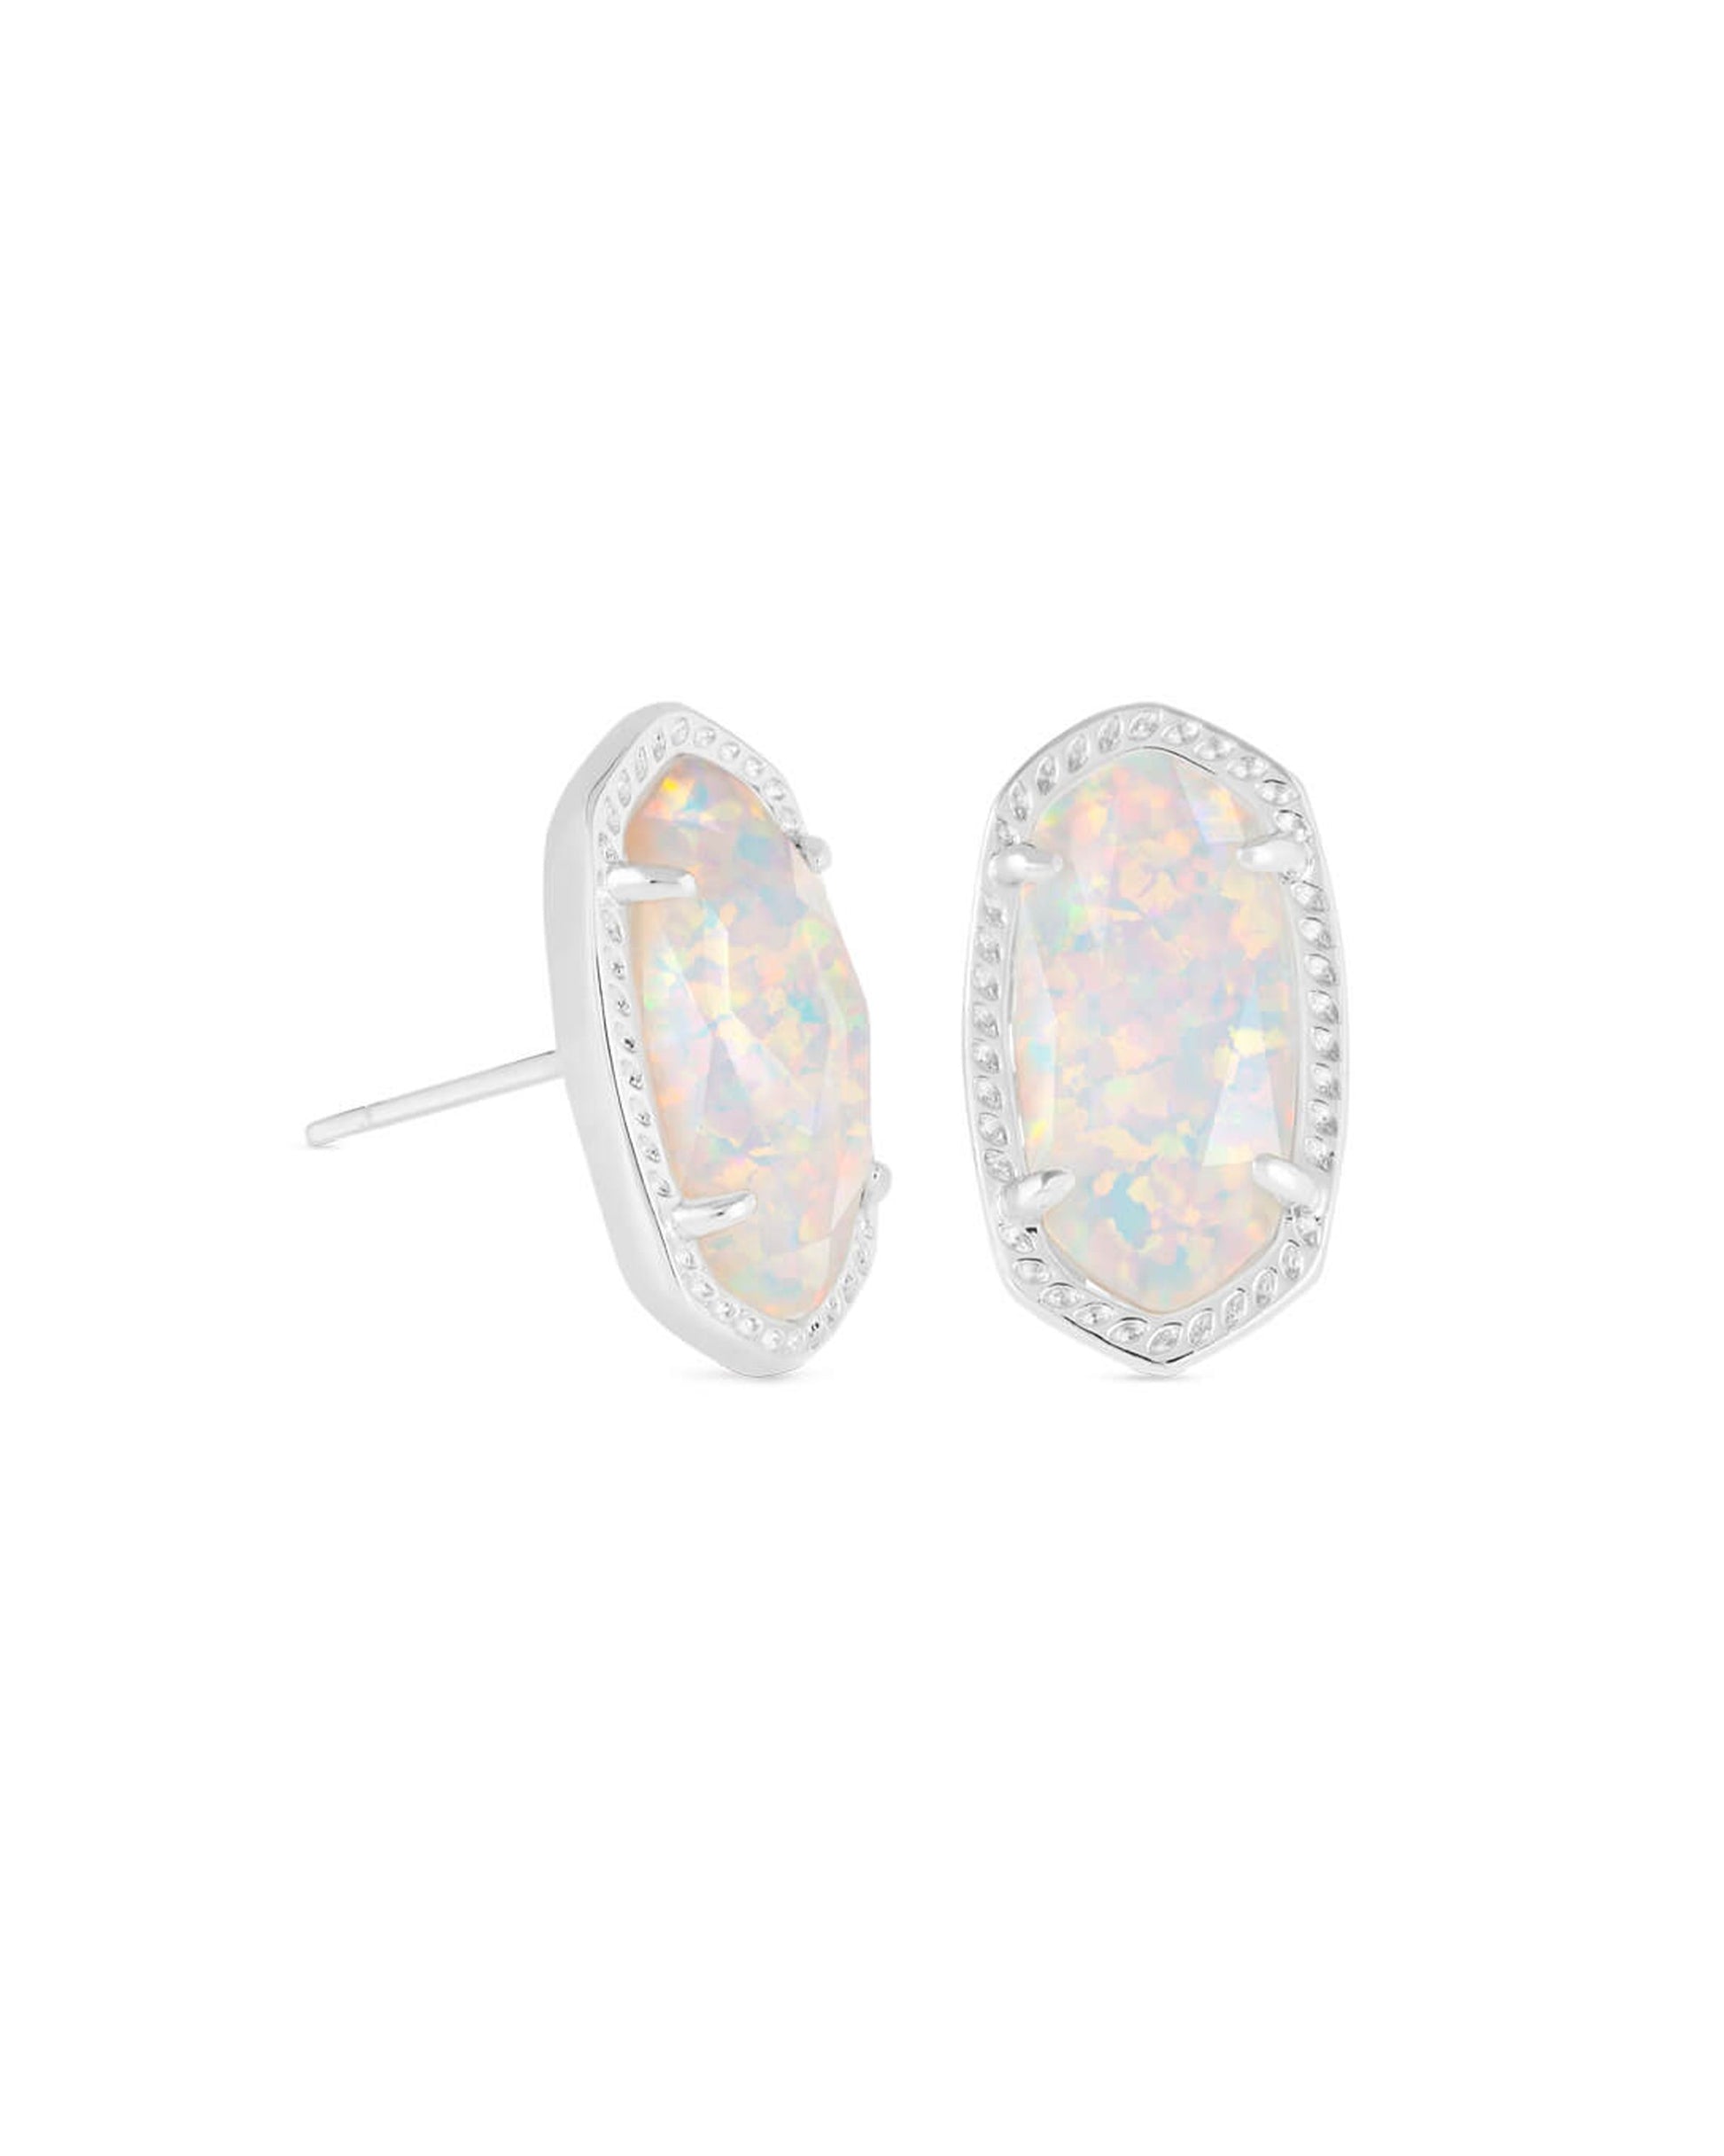 Kendra Scott Baguette Ellie Stud Earrings Rhodium White Opal-Earrings-Kendra Scott-E1990RHD-The Twisted Chandelier